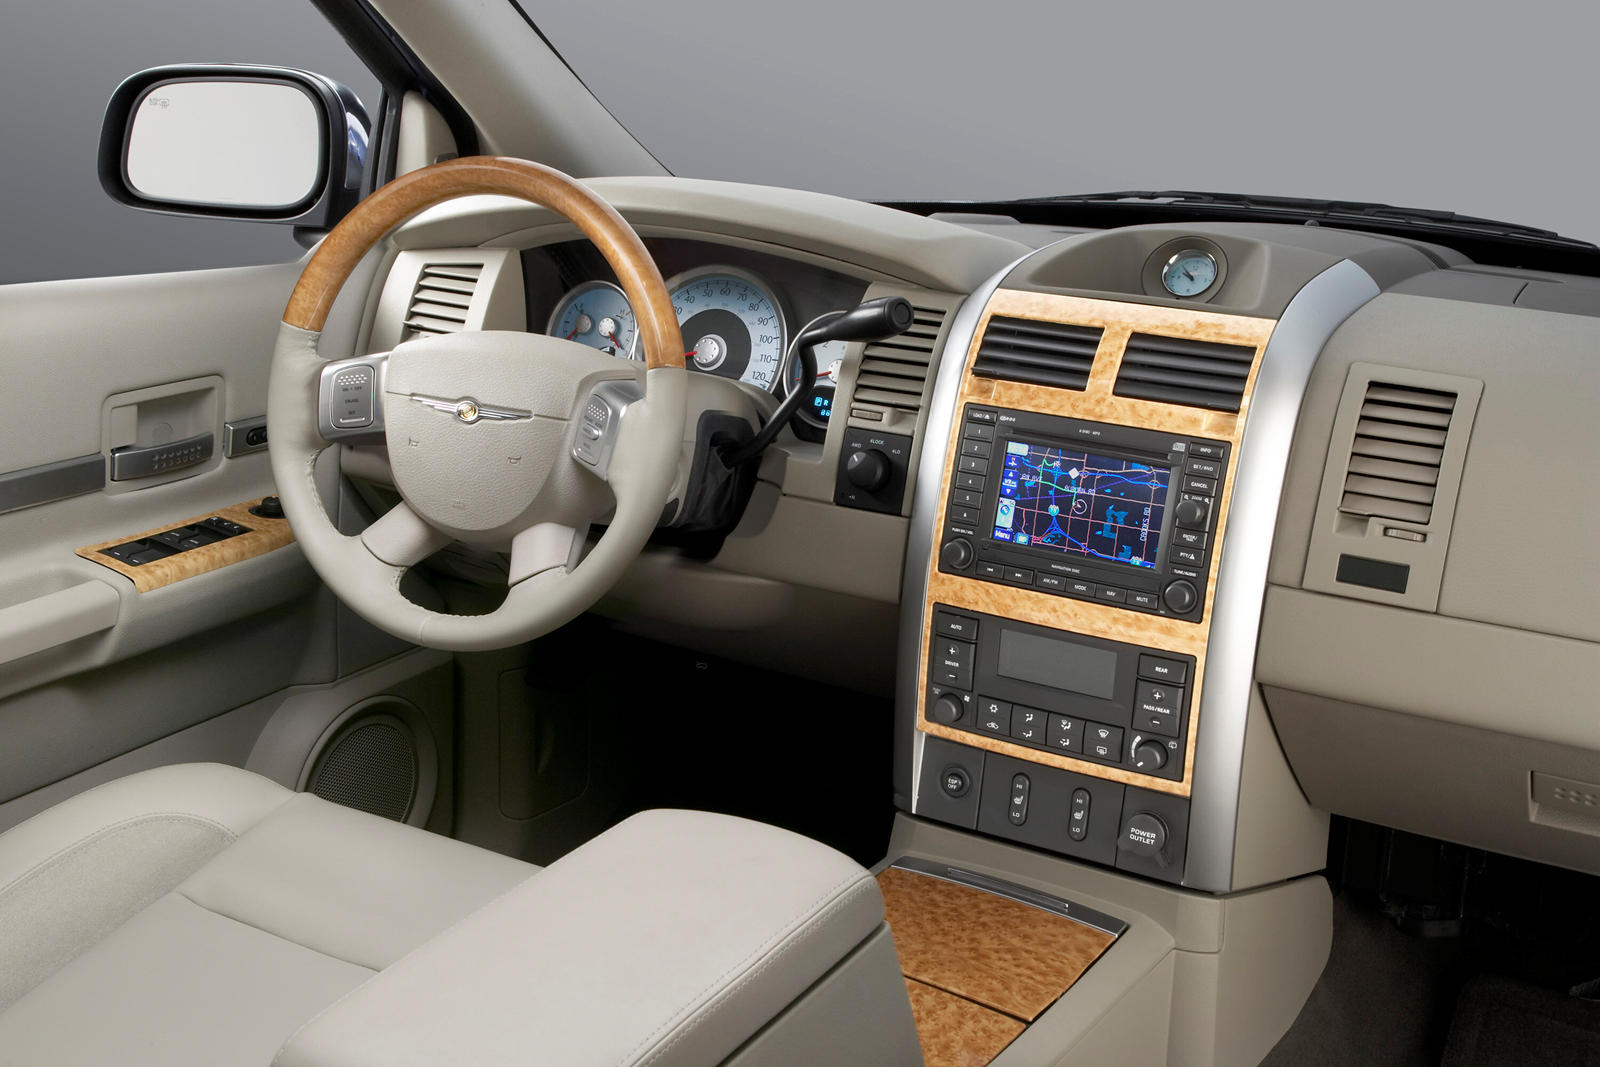 2009 Chrysler Aspen Interior Photos | CarBuzz